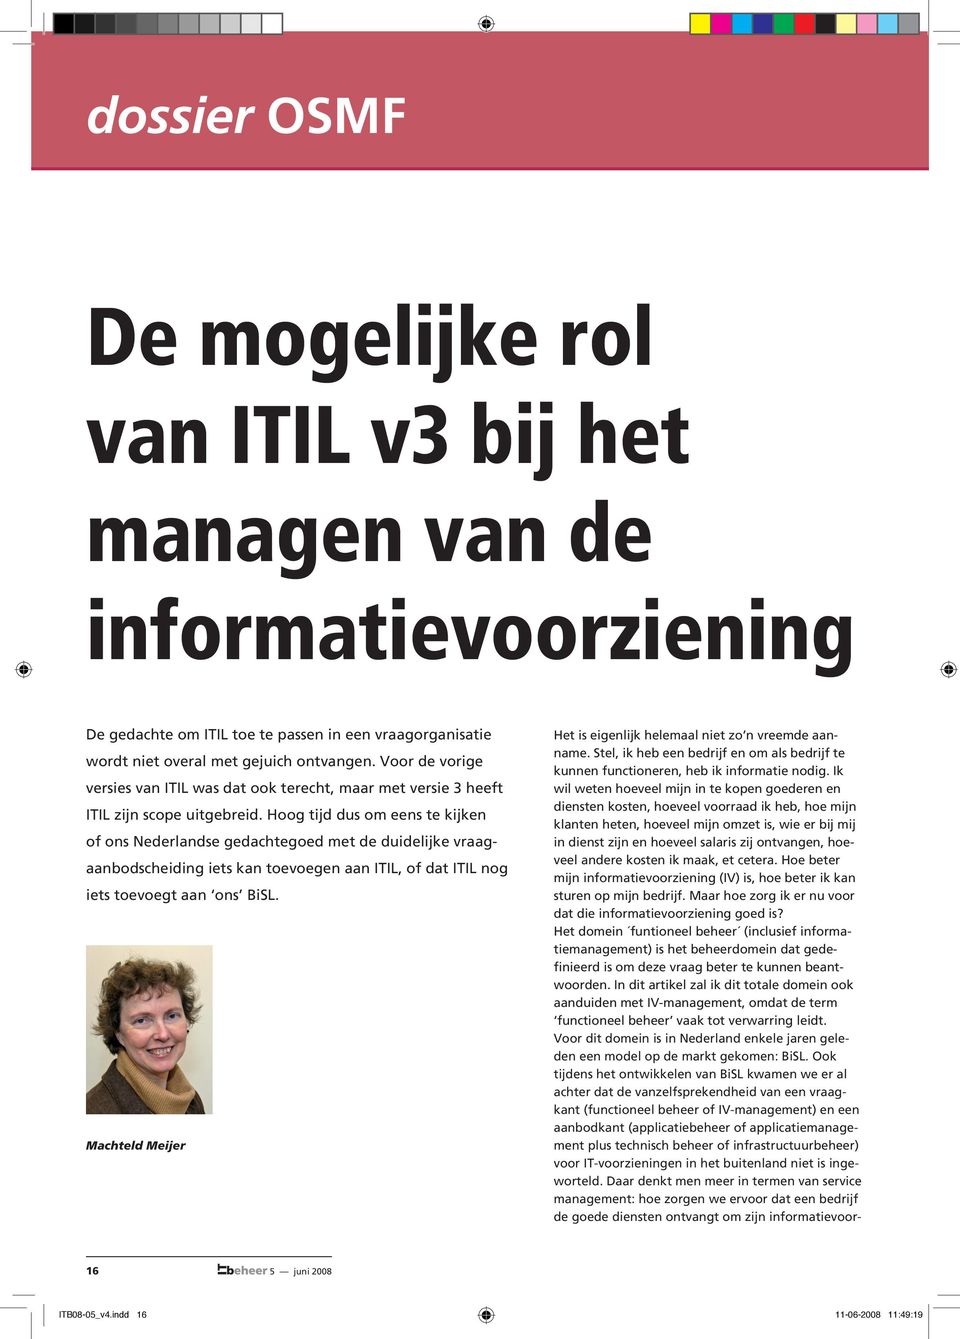 Hoog tijd dus om eens te kijken of ons Nederlandse gedachtegoed met de duidelijke vraagaanbodscheiding iets kan toevoegen aan ITIL, of dat ITIL nog iets toevoegt aan ons BiSL.